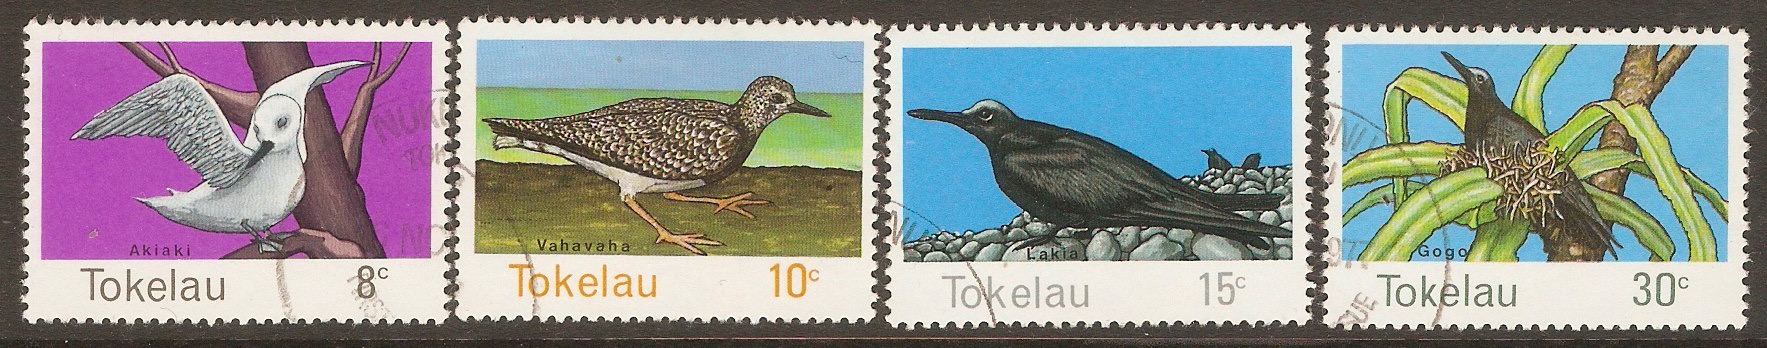 Tokelau Islands 1977 Birds set. SG57-SG60.